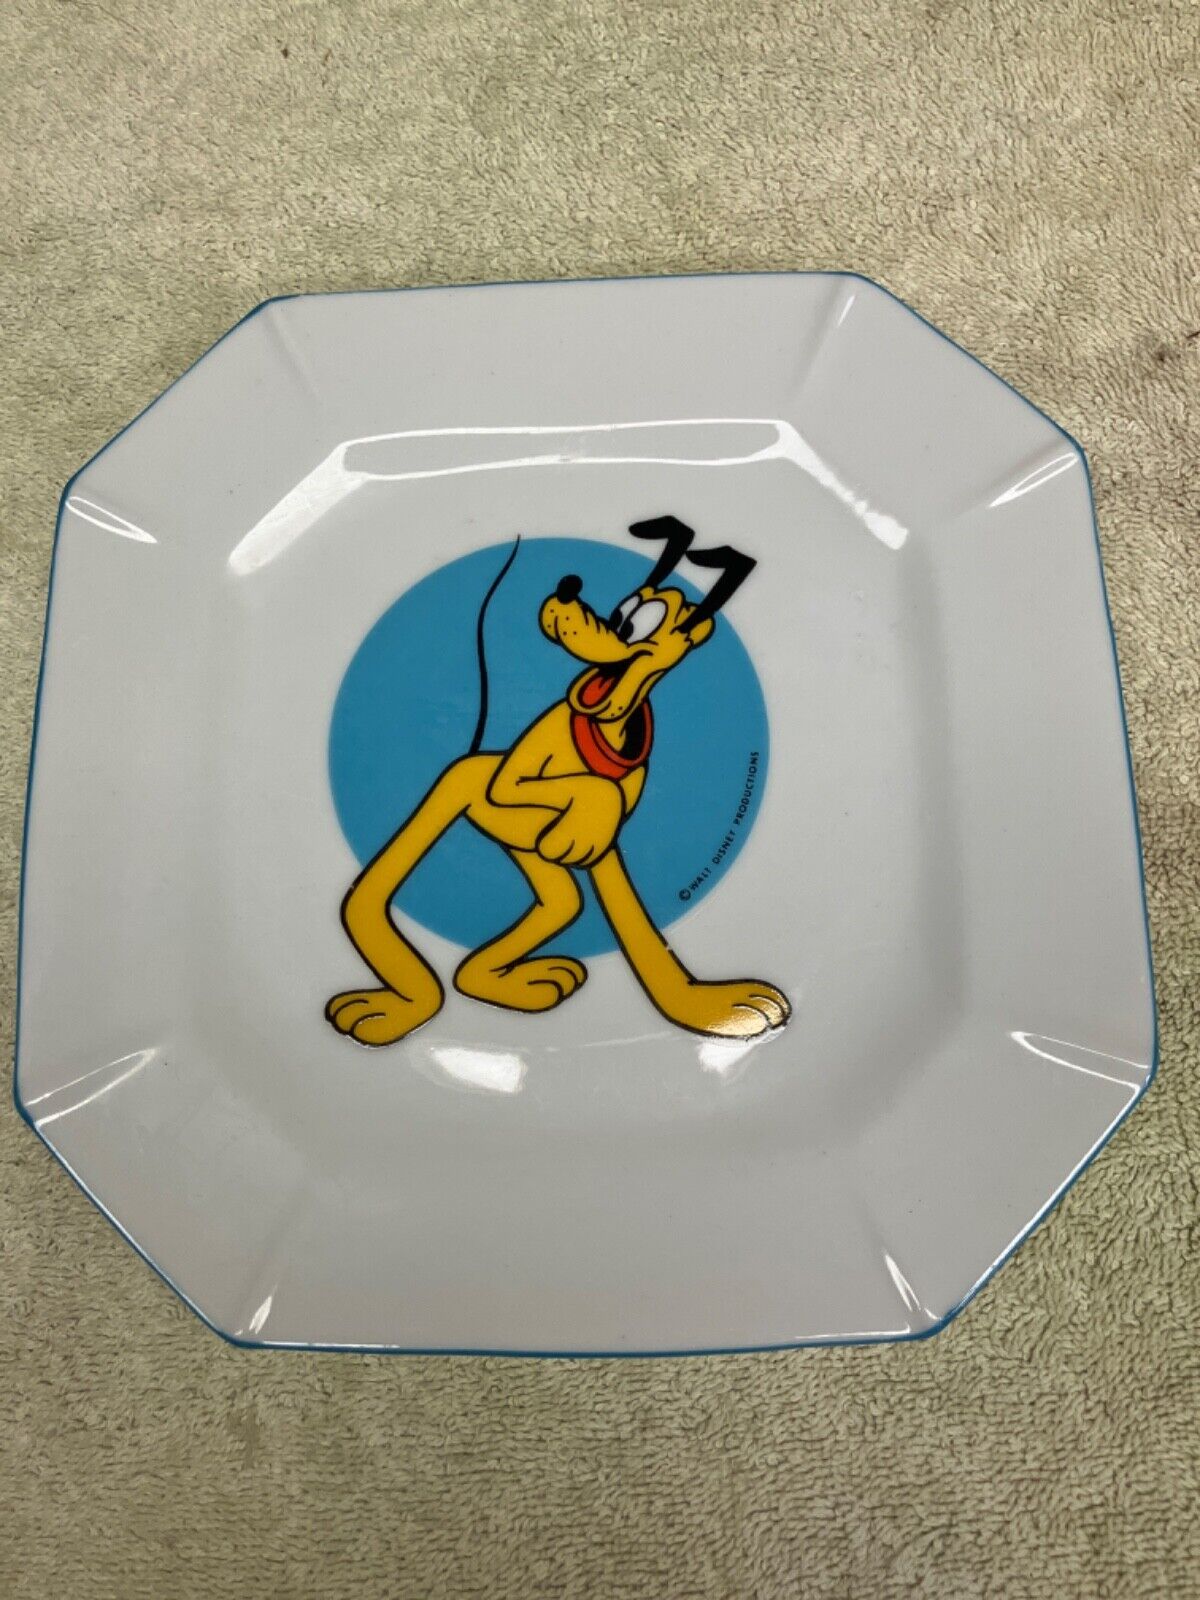 Vintage Walt Disney Plate - Pluto made in Japan